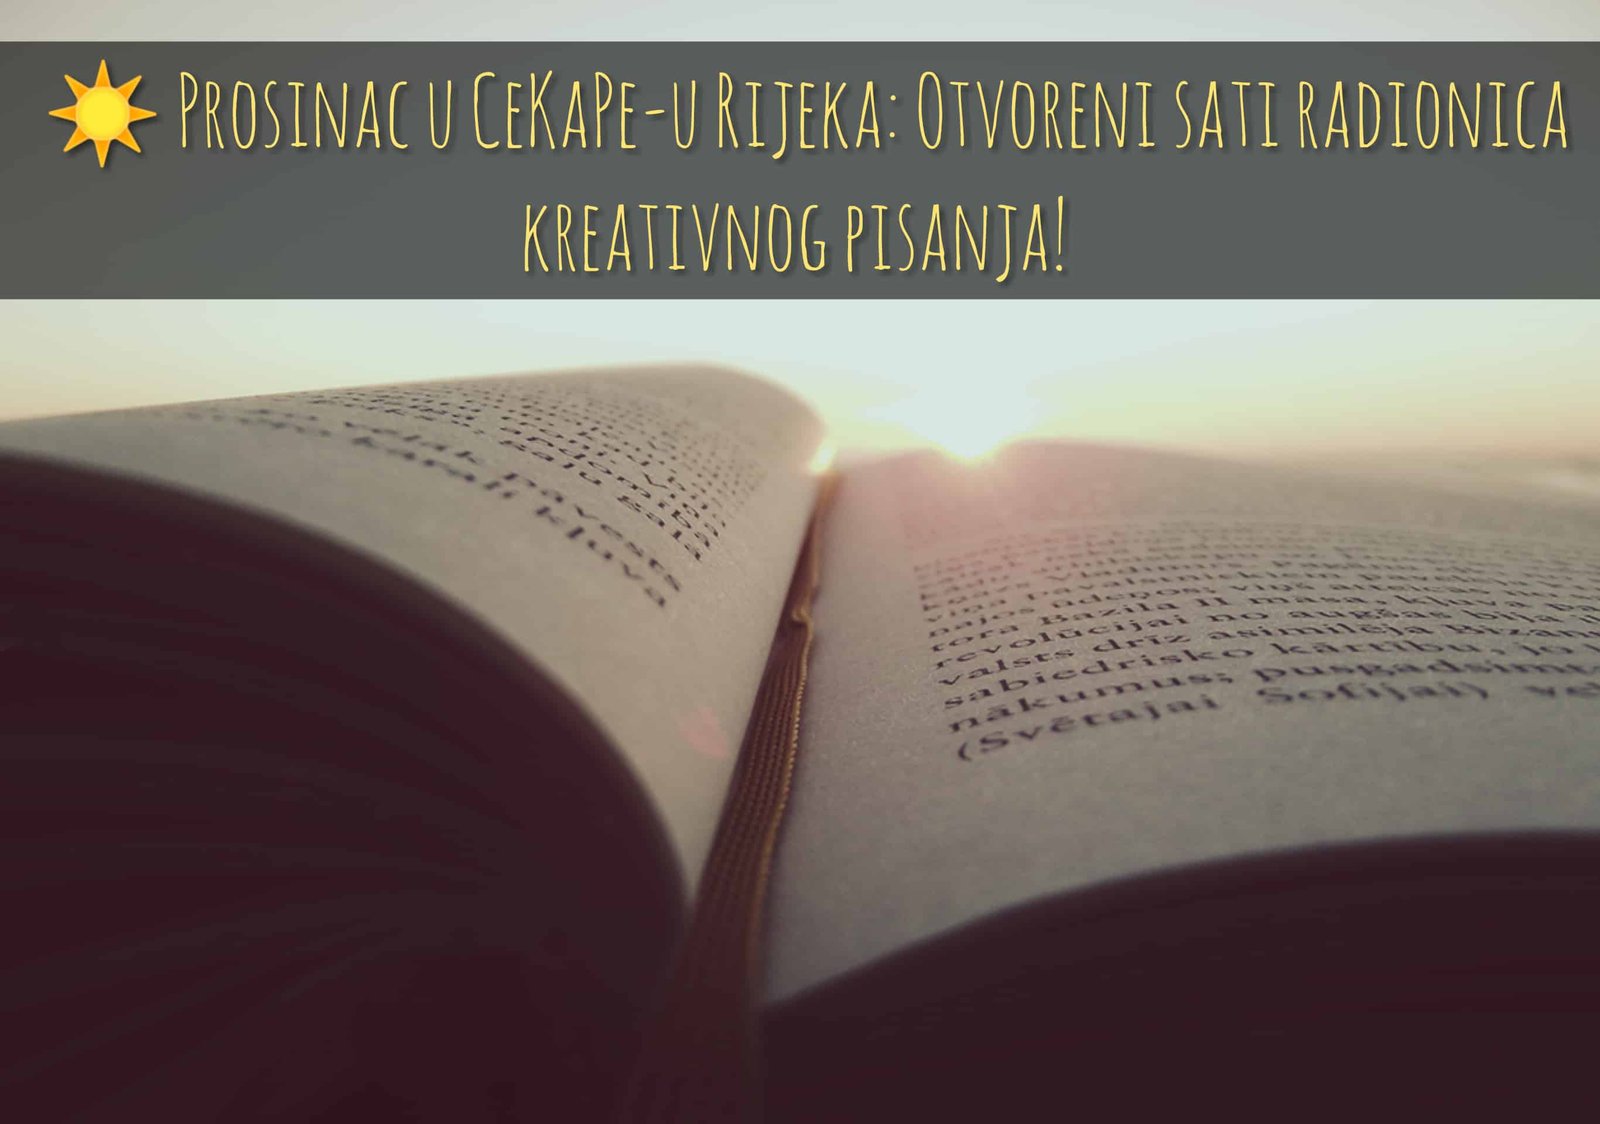 CeKaPe Rijeka: Otvoreni sati radionica kreativnog pisanja!